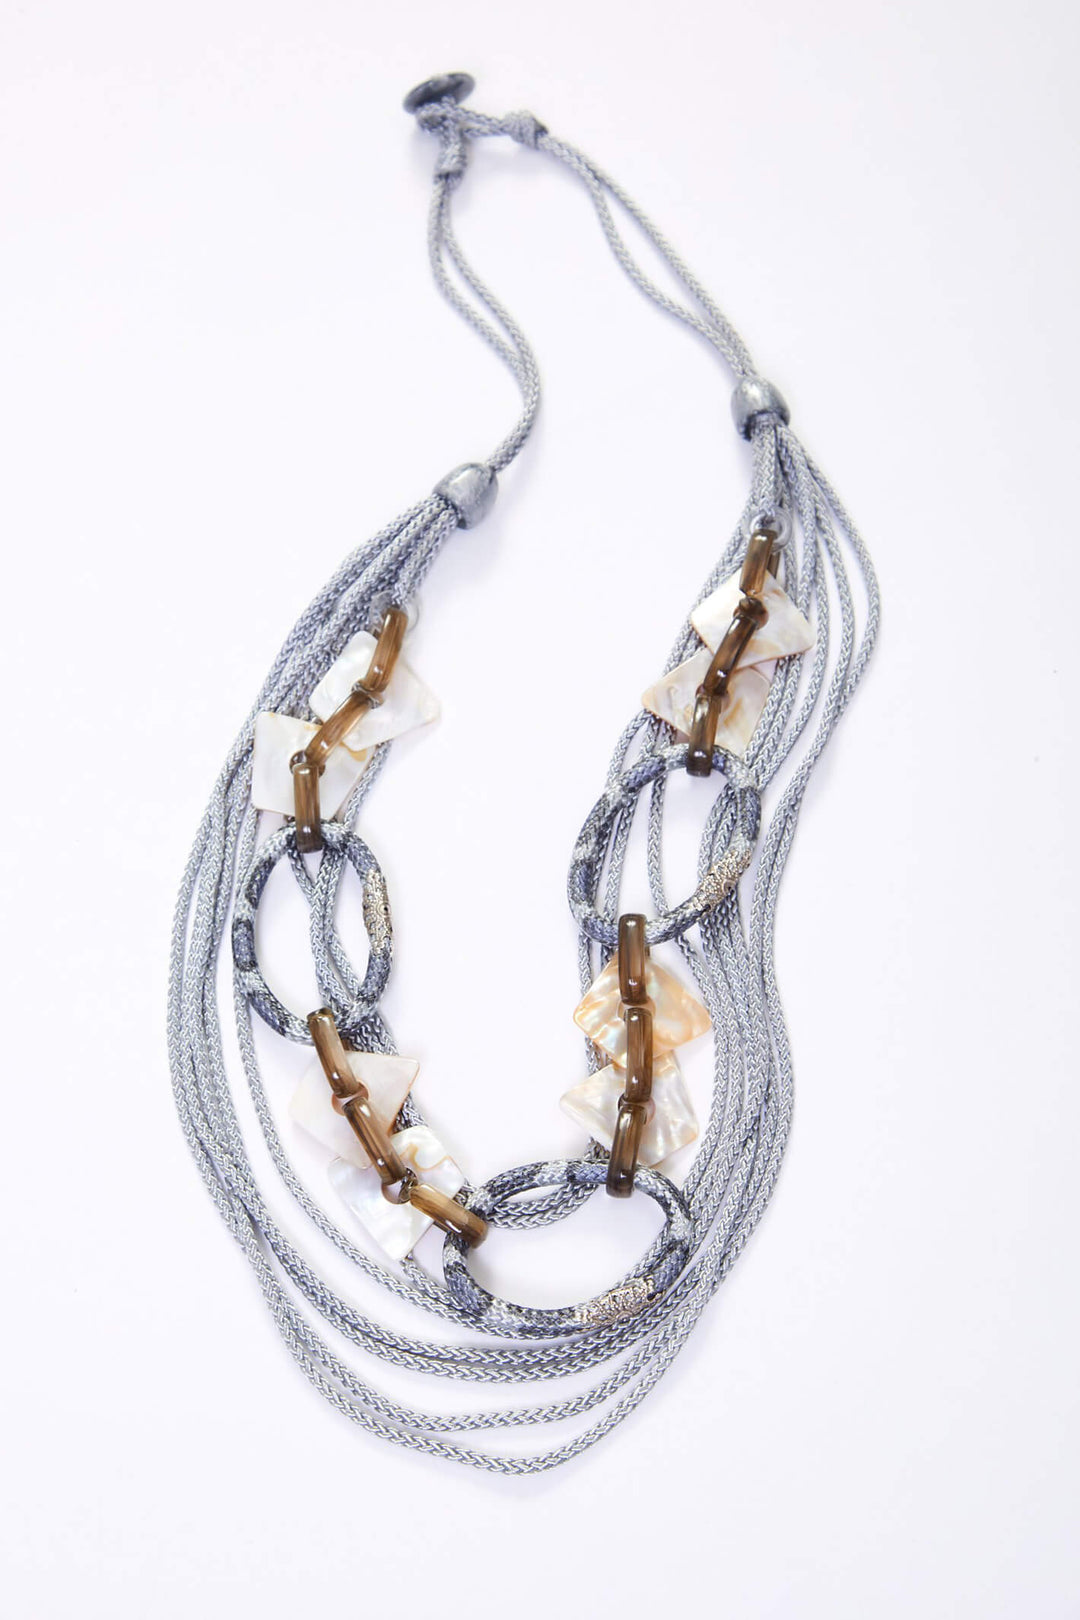 Naya NAS23278 Stone String Beading With Shell Trim Necklace - Olivia Grace Fashion